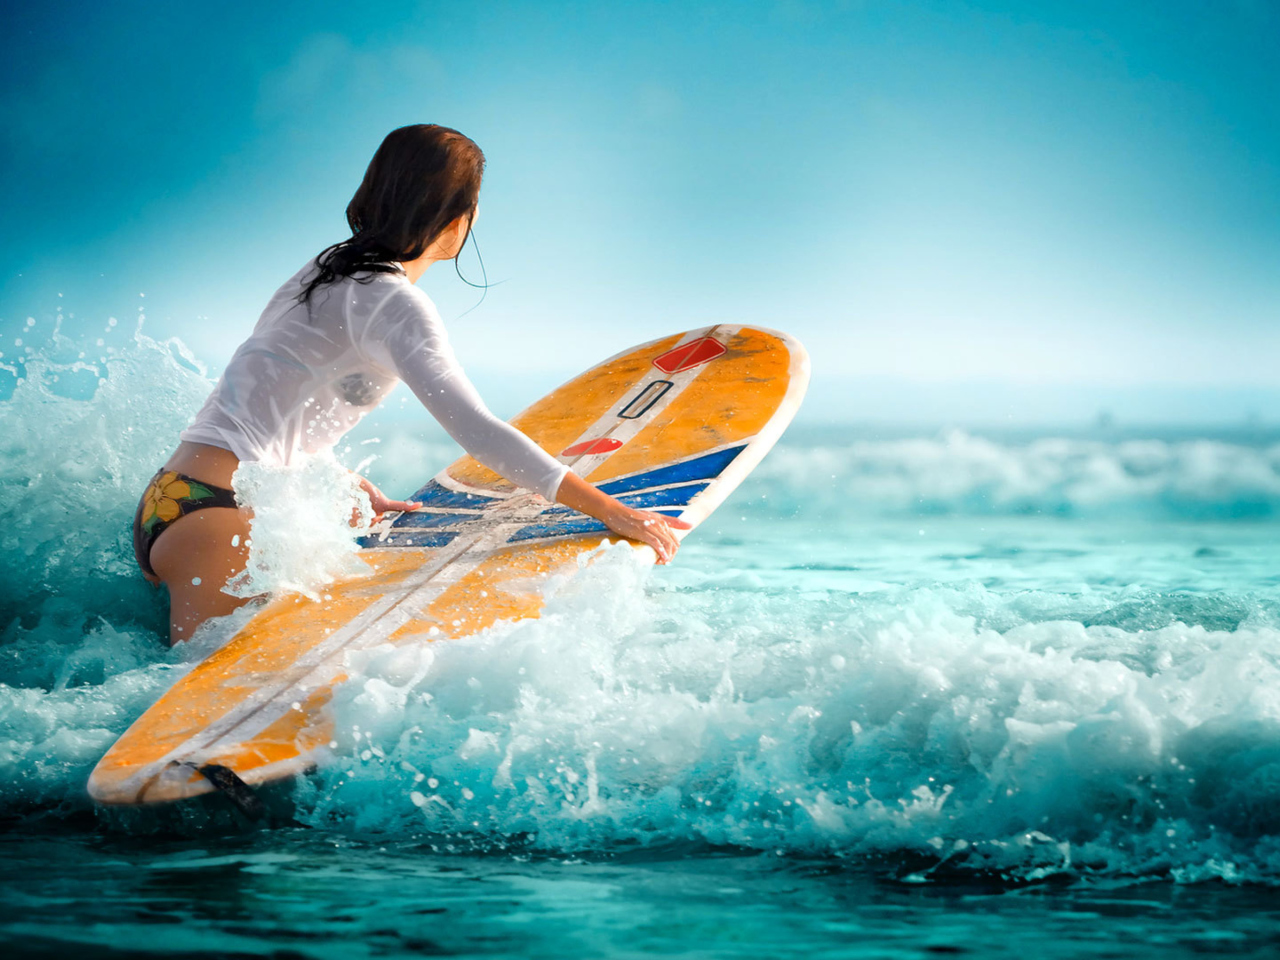 Обои Surfing Girl 1280x960